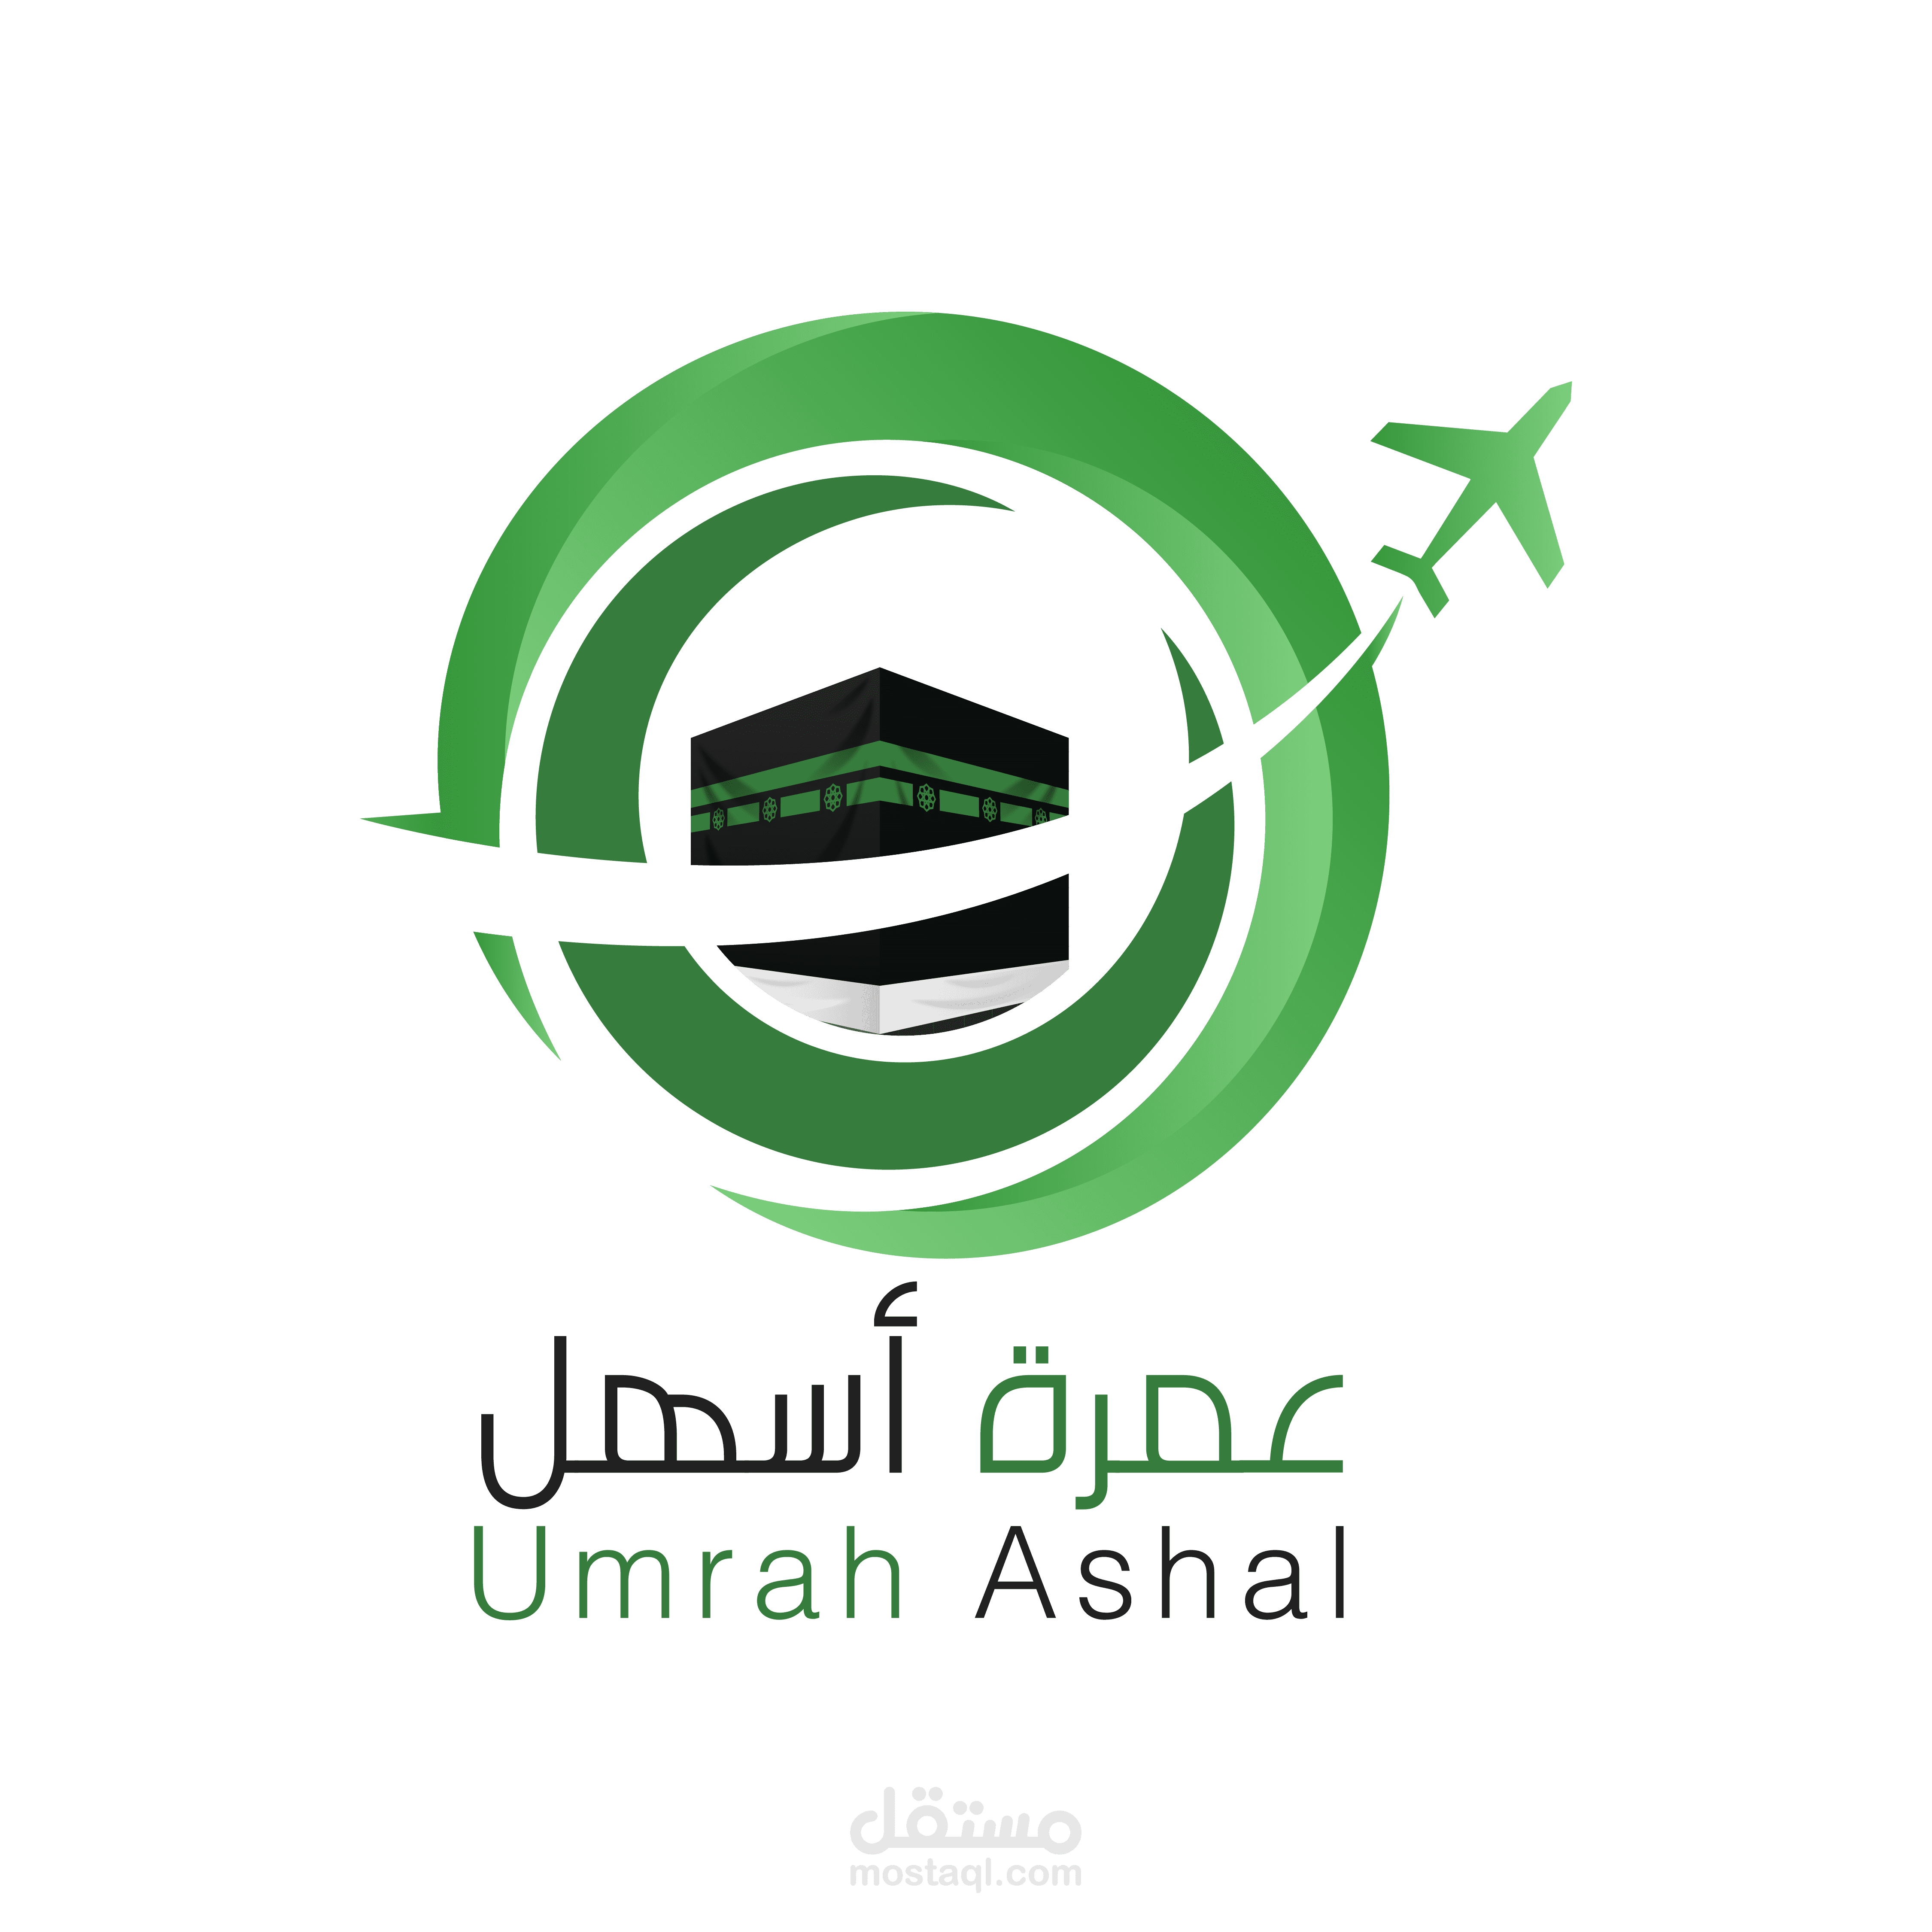 umrah-ashal